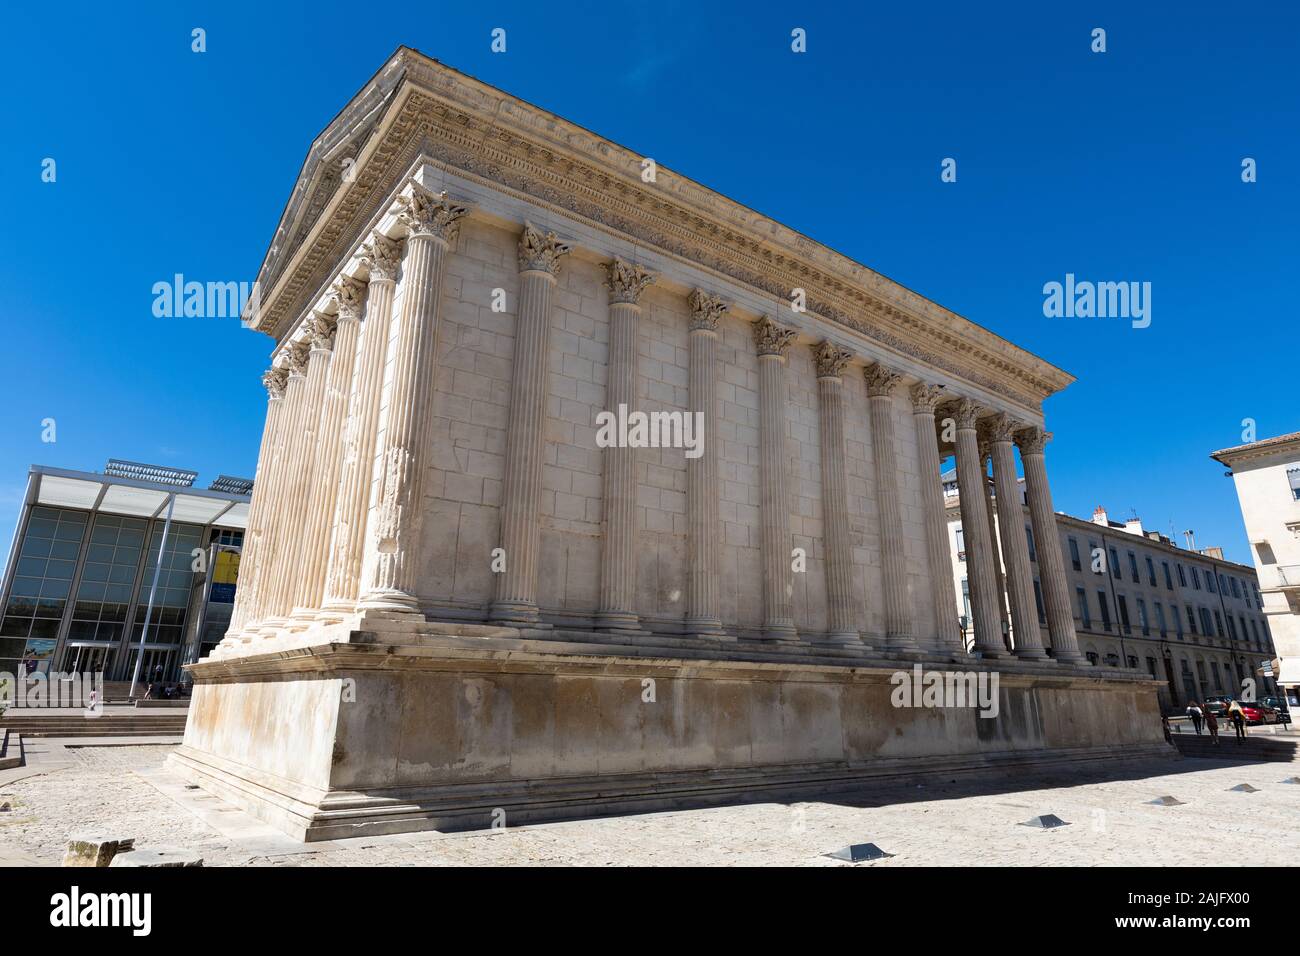 La antigua construcción romana, Maison Carree en el centro de la ciudad de Nimes, Provenza, en el sur de Francia Foto de stock